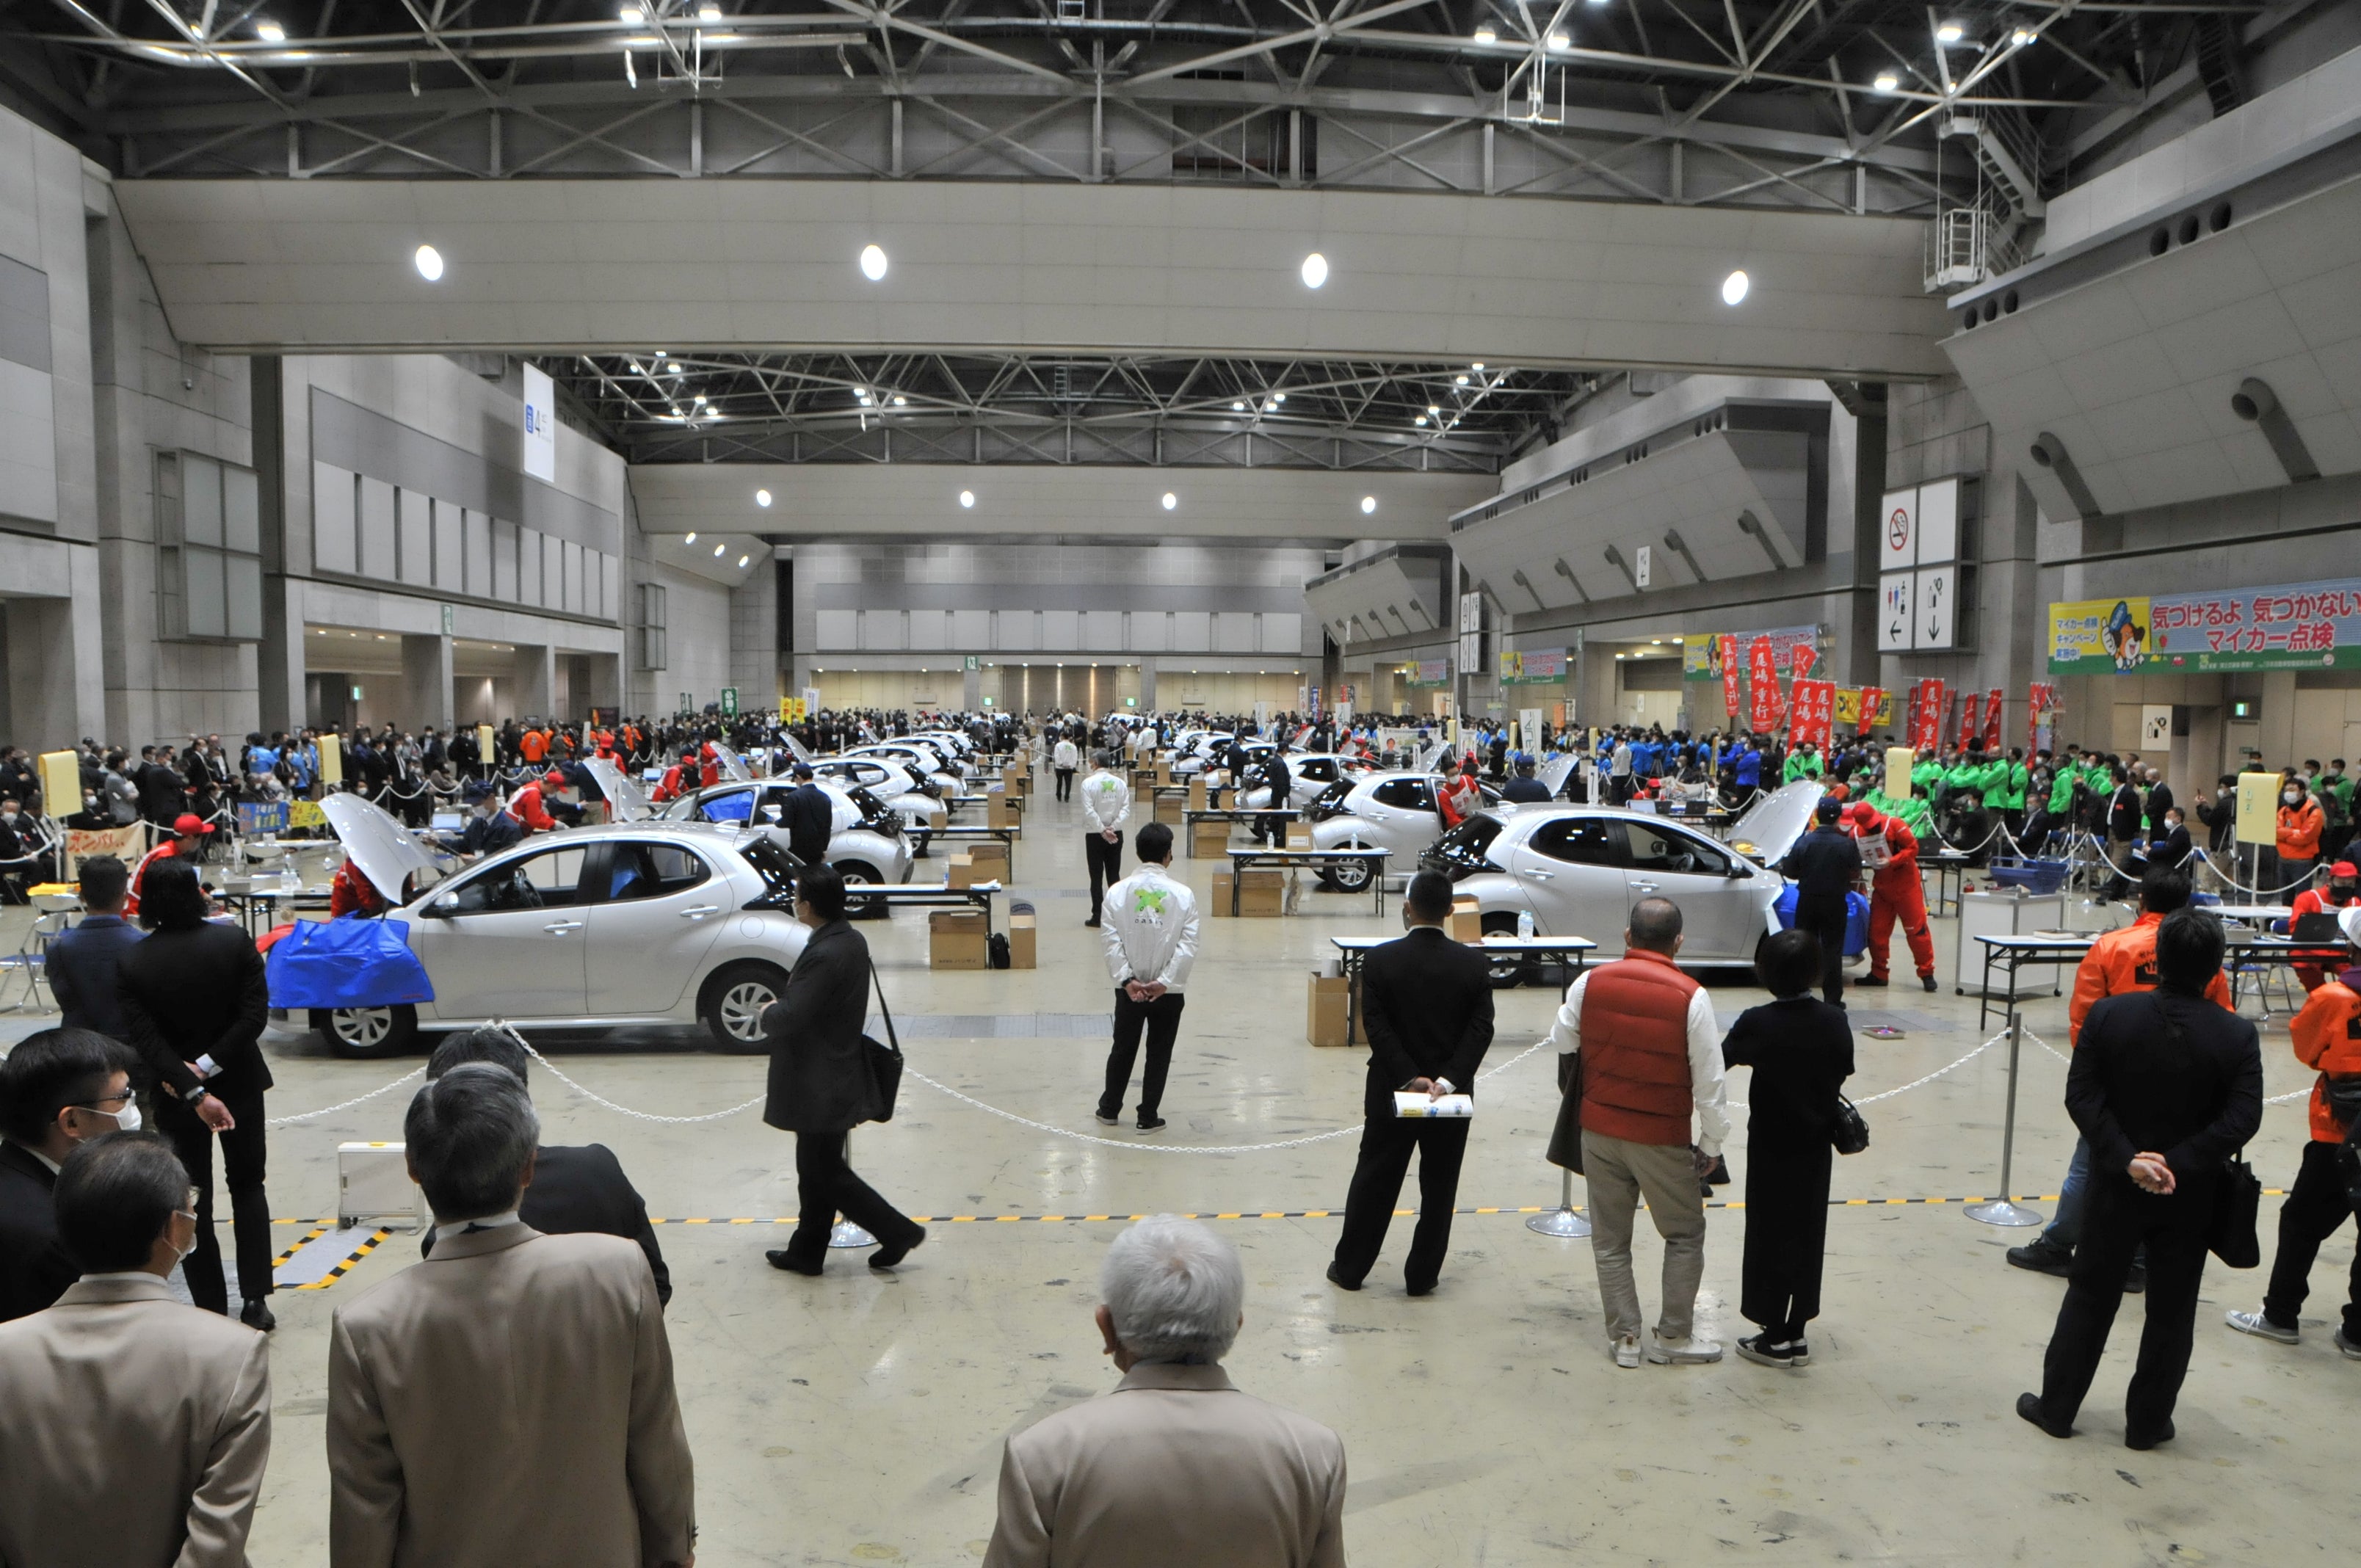 「第23回 全日本自動車整備技能競技大会」の会場風景。2022年大会には90人が参加し、その腕を競った。